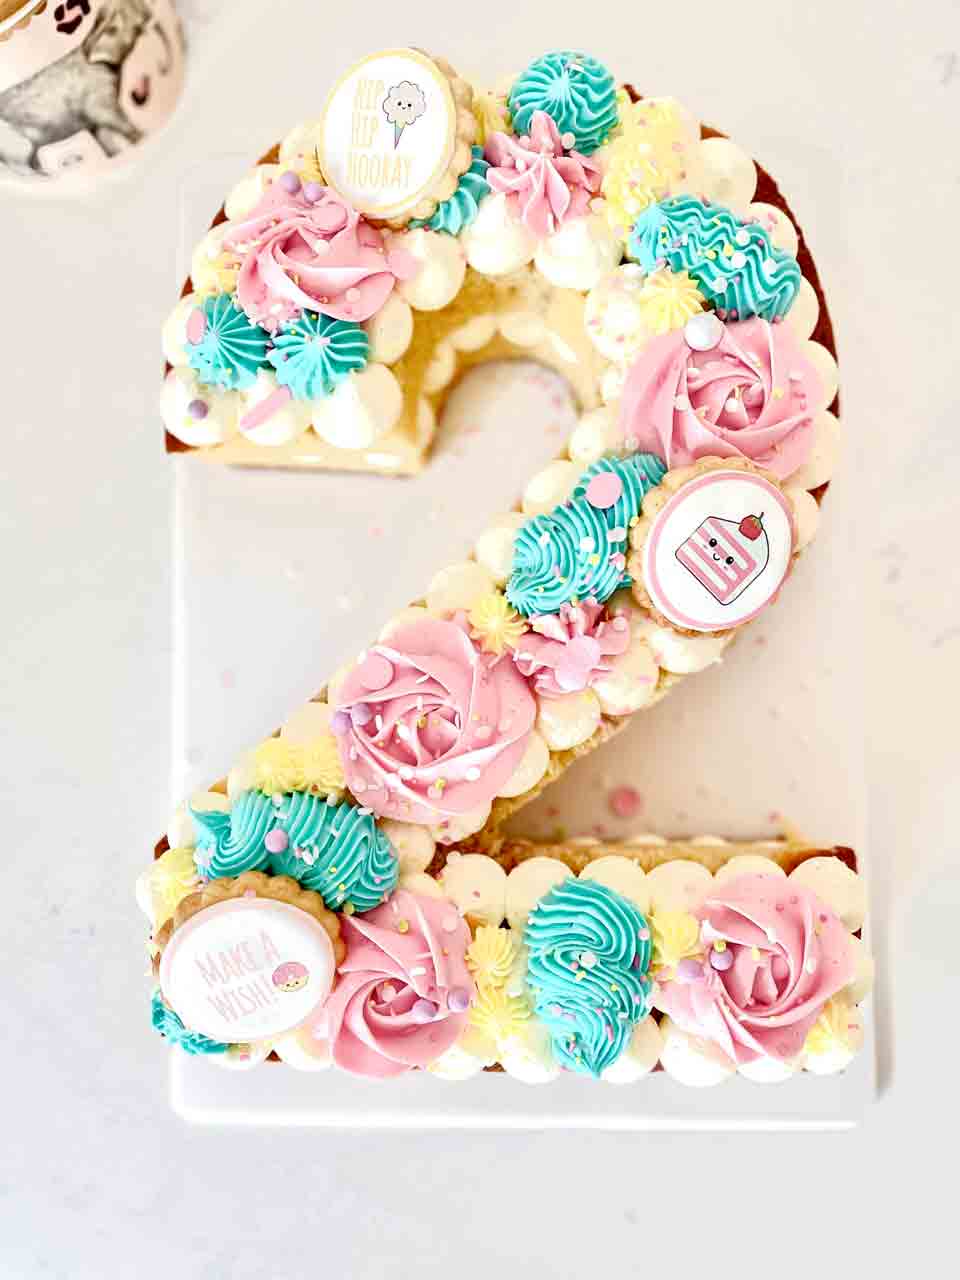 Dublin's Bakery - Eve's Cakes | Birthday Cakes | Wedding Cakes